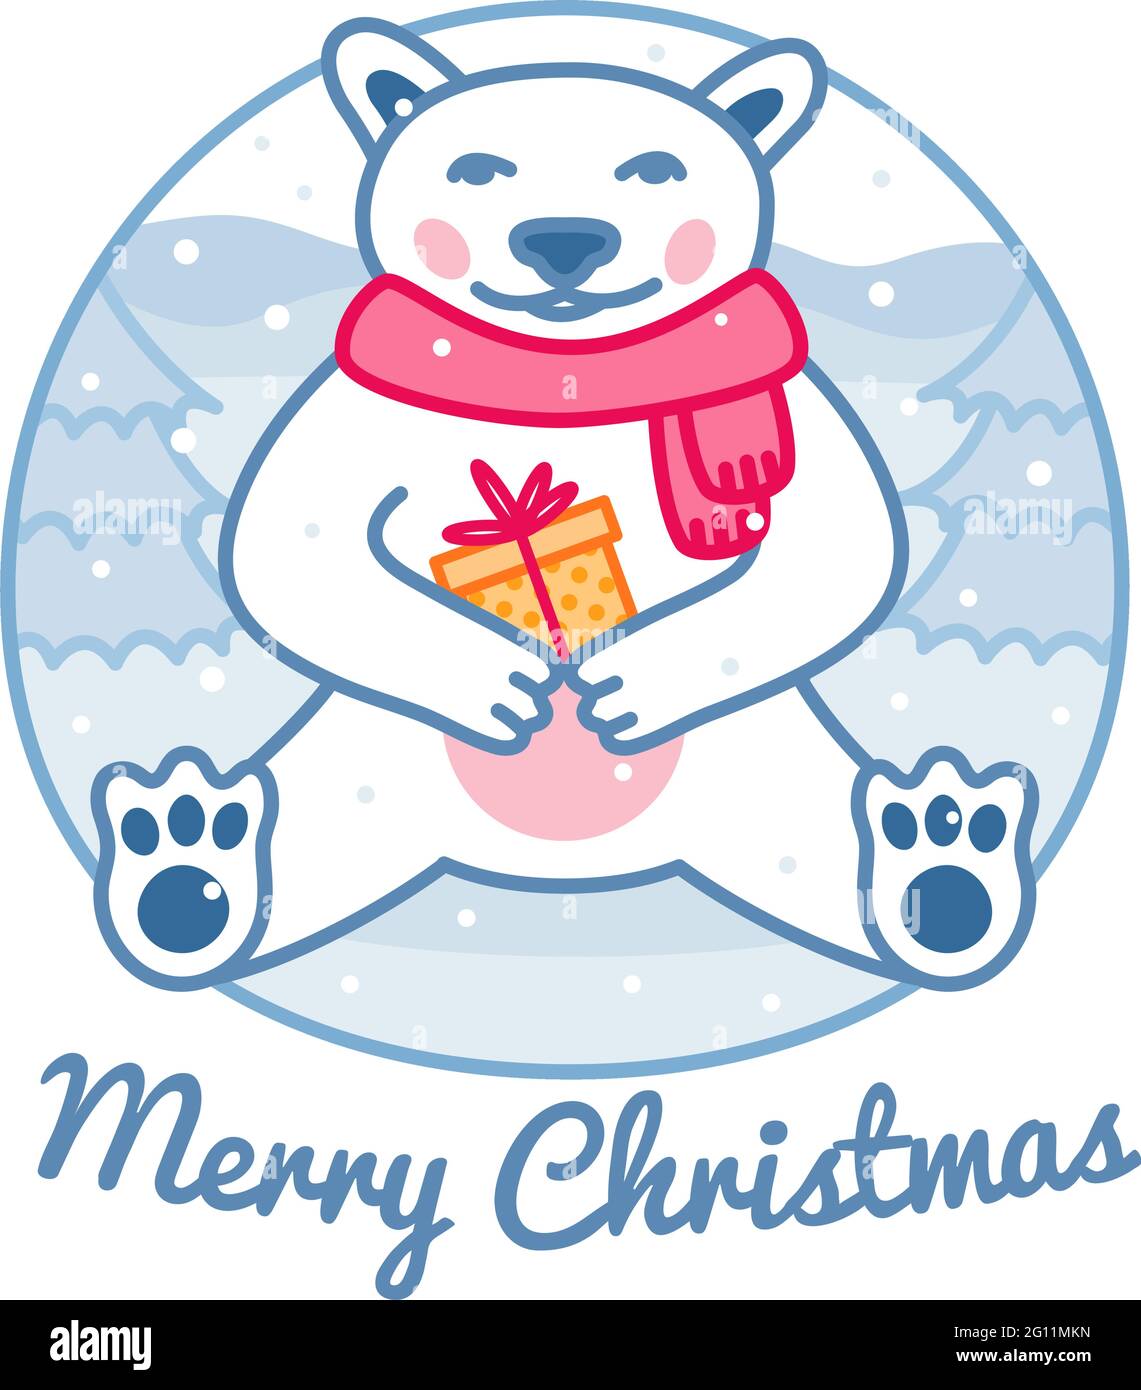 Eisbär mit eingewickelter Geschenkbox trägt roten Schal, Weihnachten niedlichen Charakter und Grußkarte, Frohe Weihnachten Zeichen, Vektor-Illustration Stock Vektor